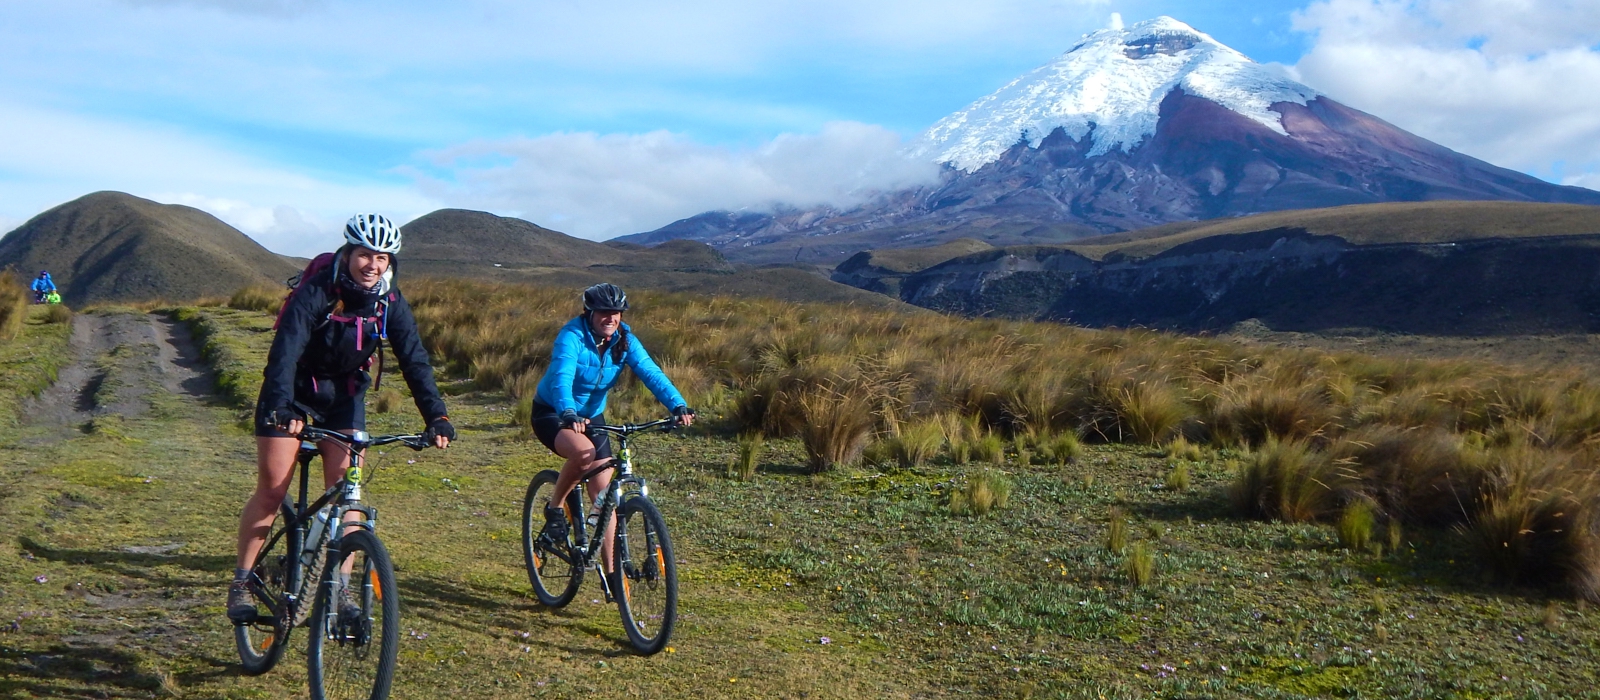 7 DAY ECUADOR - CYCLING AND HACIENDAS